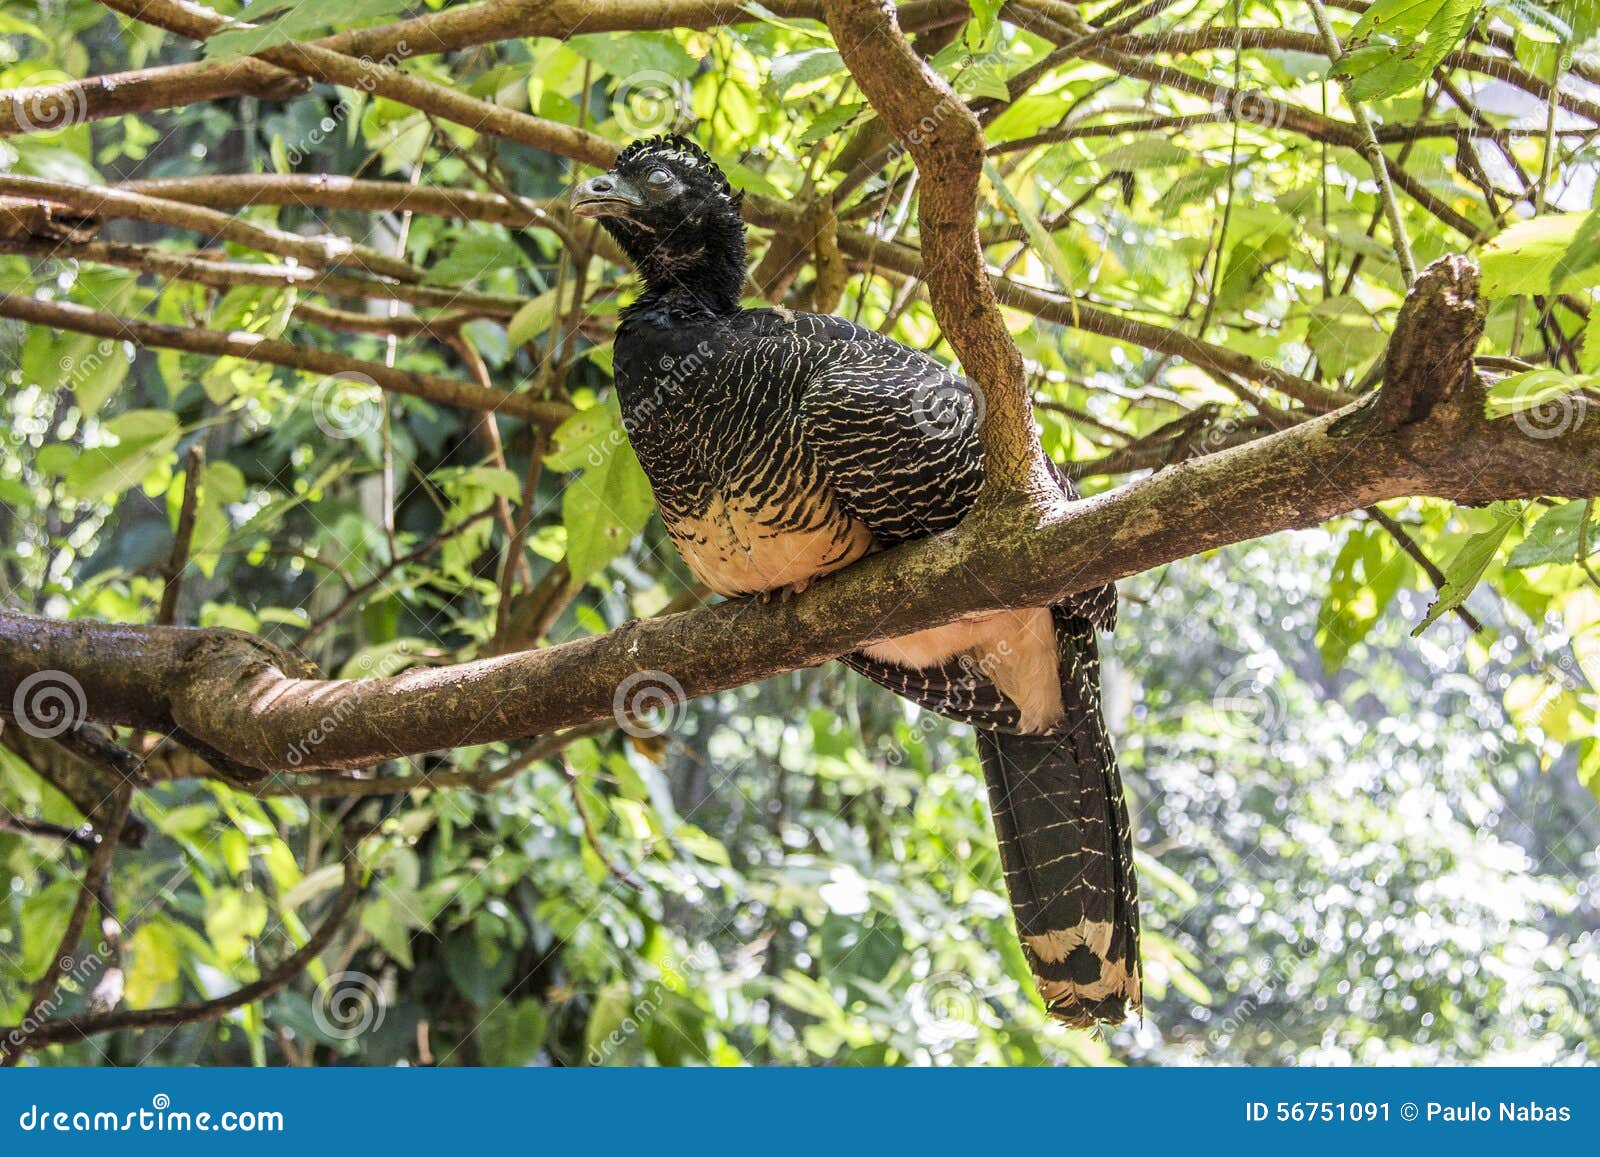 jacutinga, parque das aves, foz do iguacu, brazil.